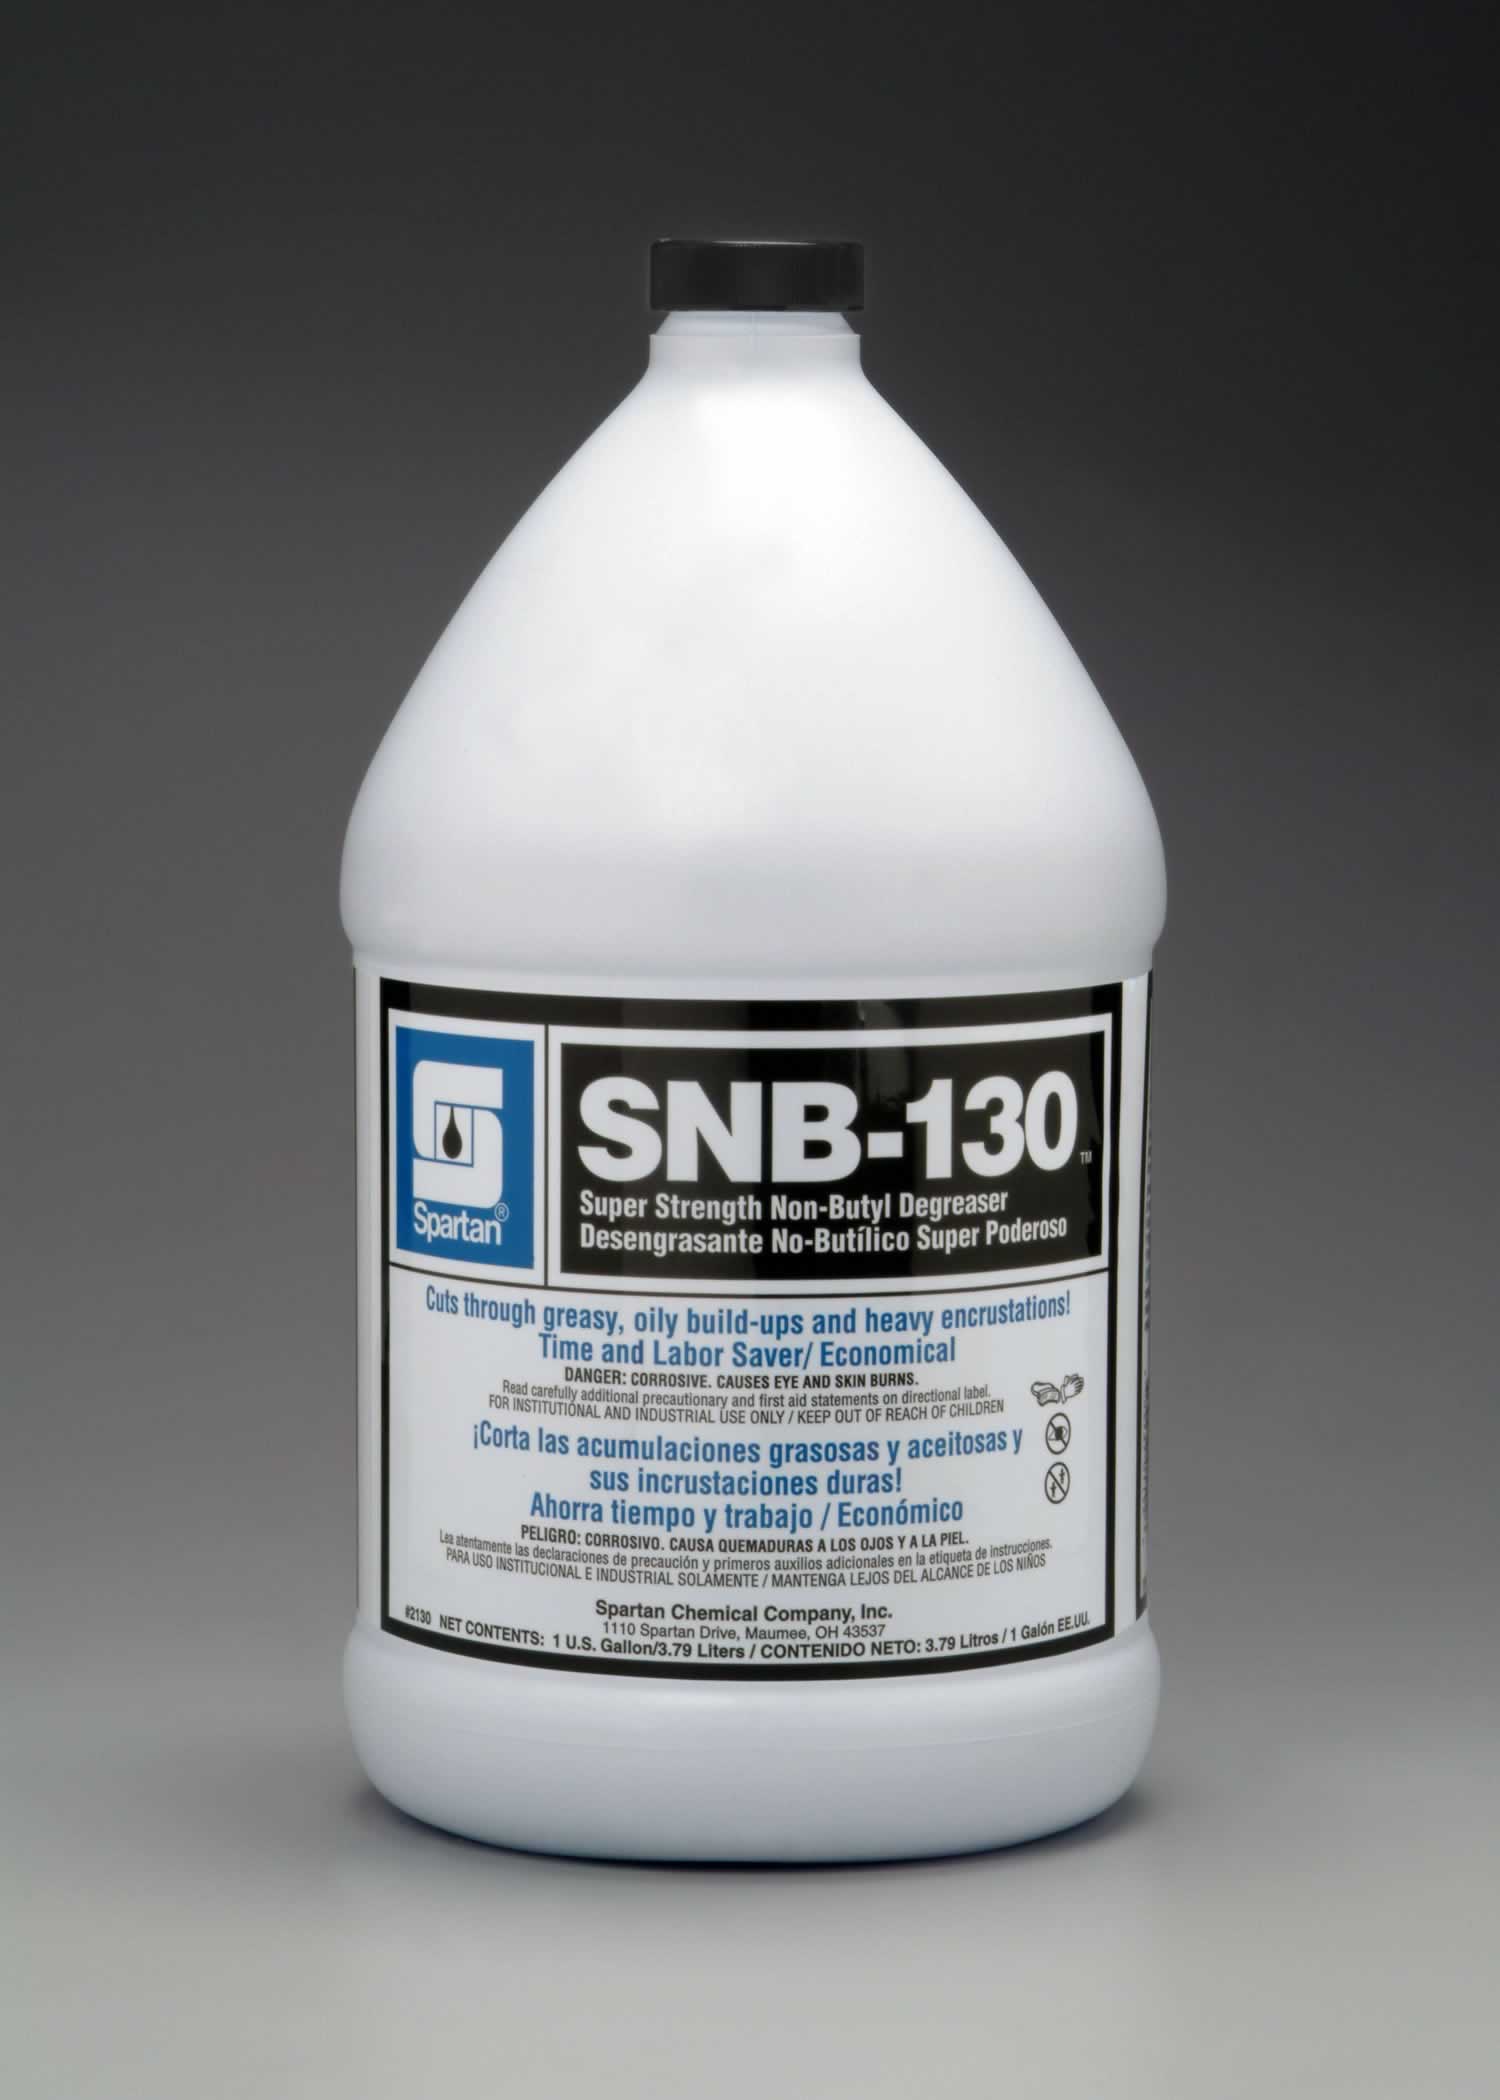 SNB 130 – Super strength non-butyl degreaser cuts through oily buildup